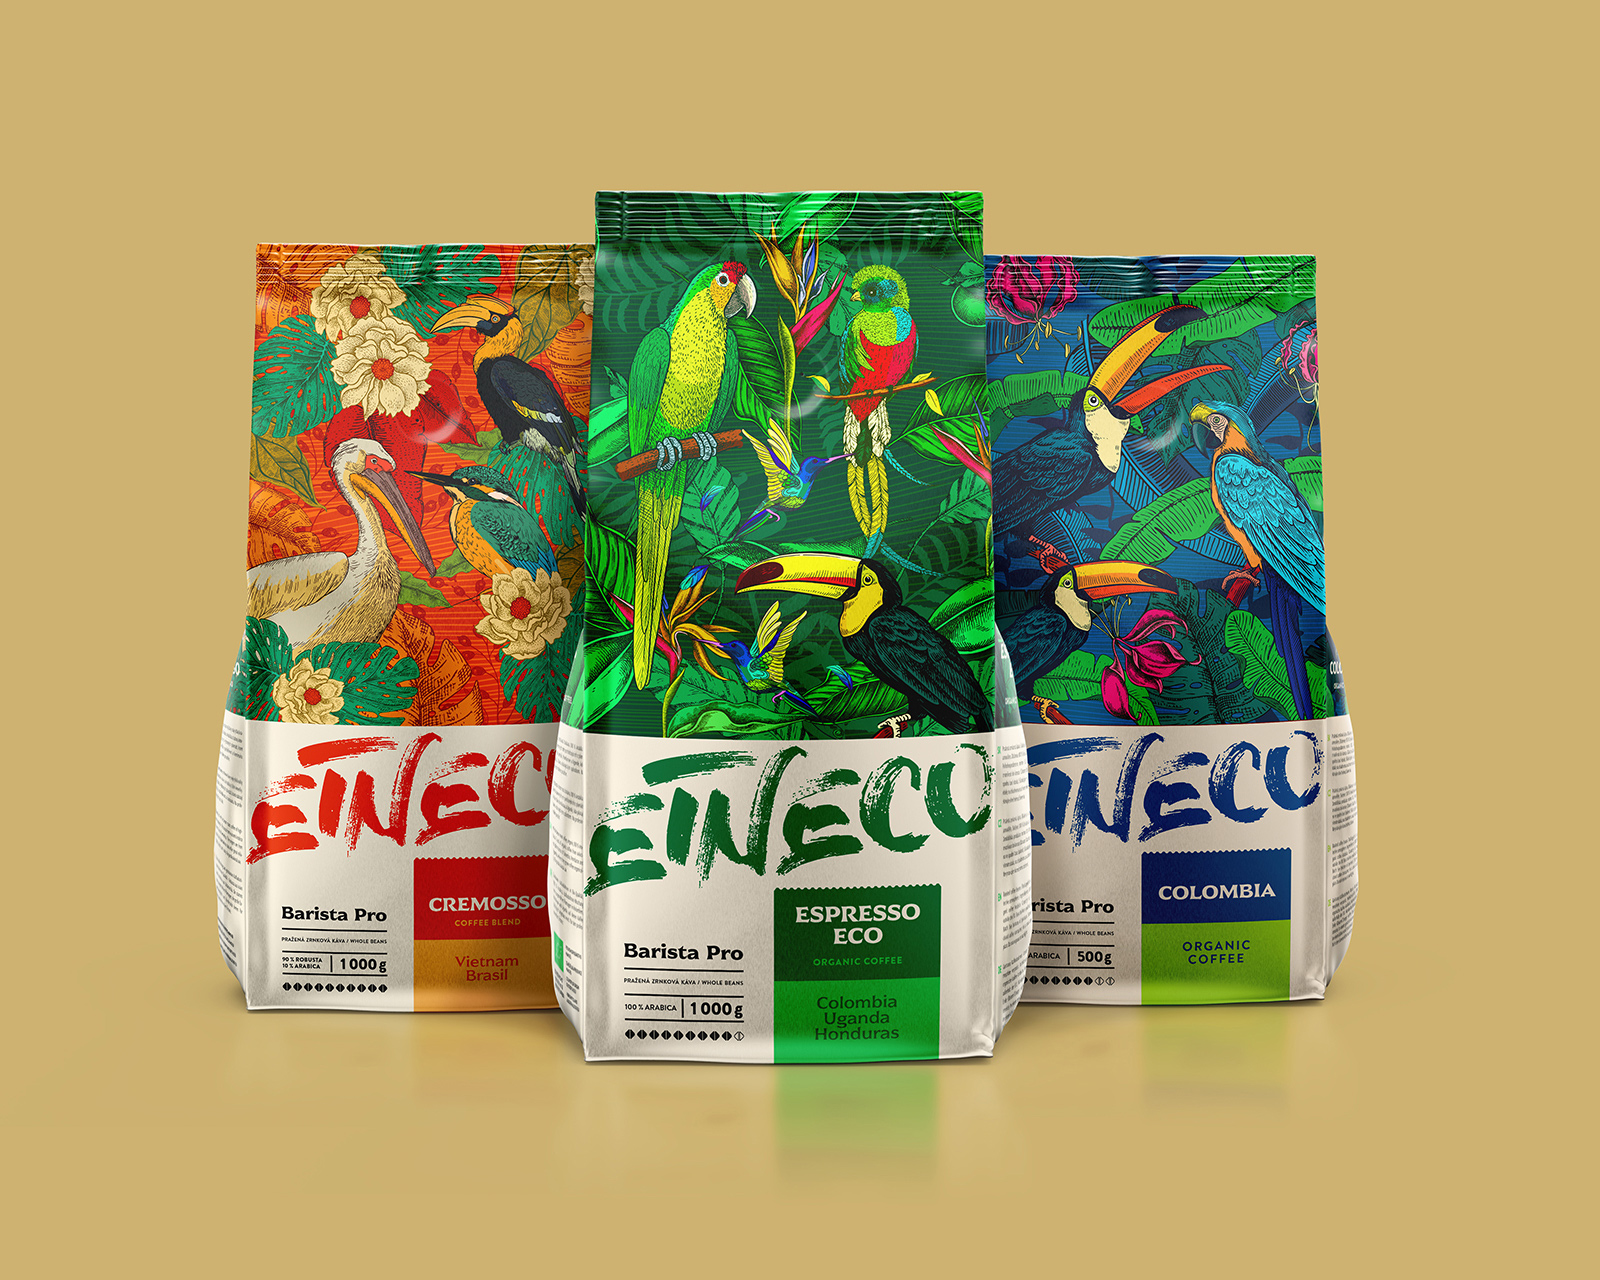 Etneco咖啡富有创意的包装设计欣赏